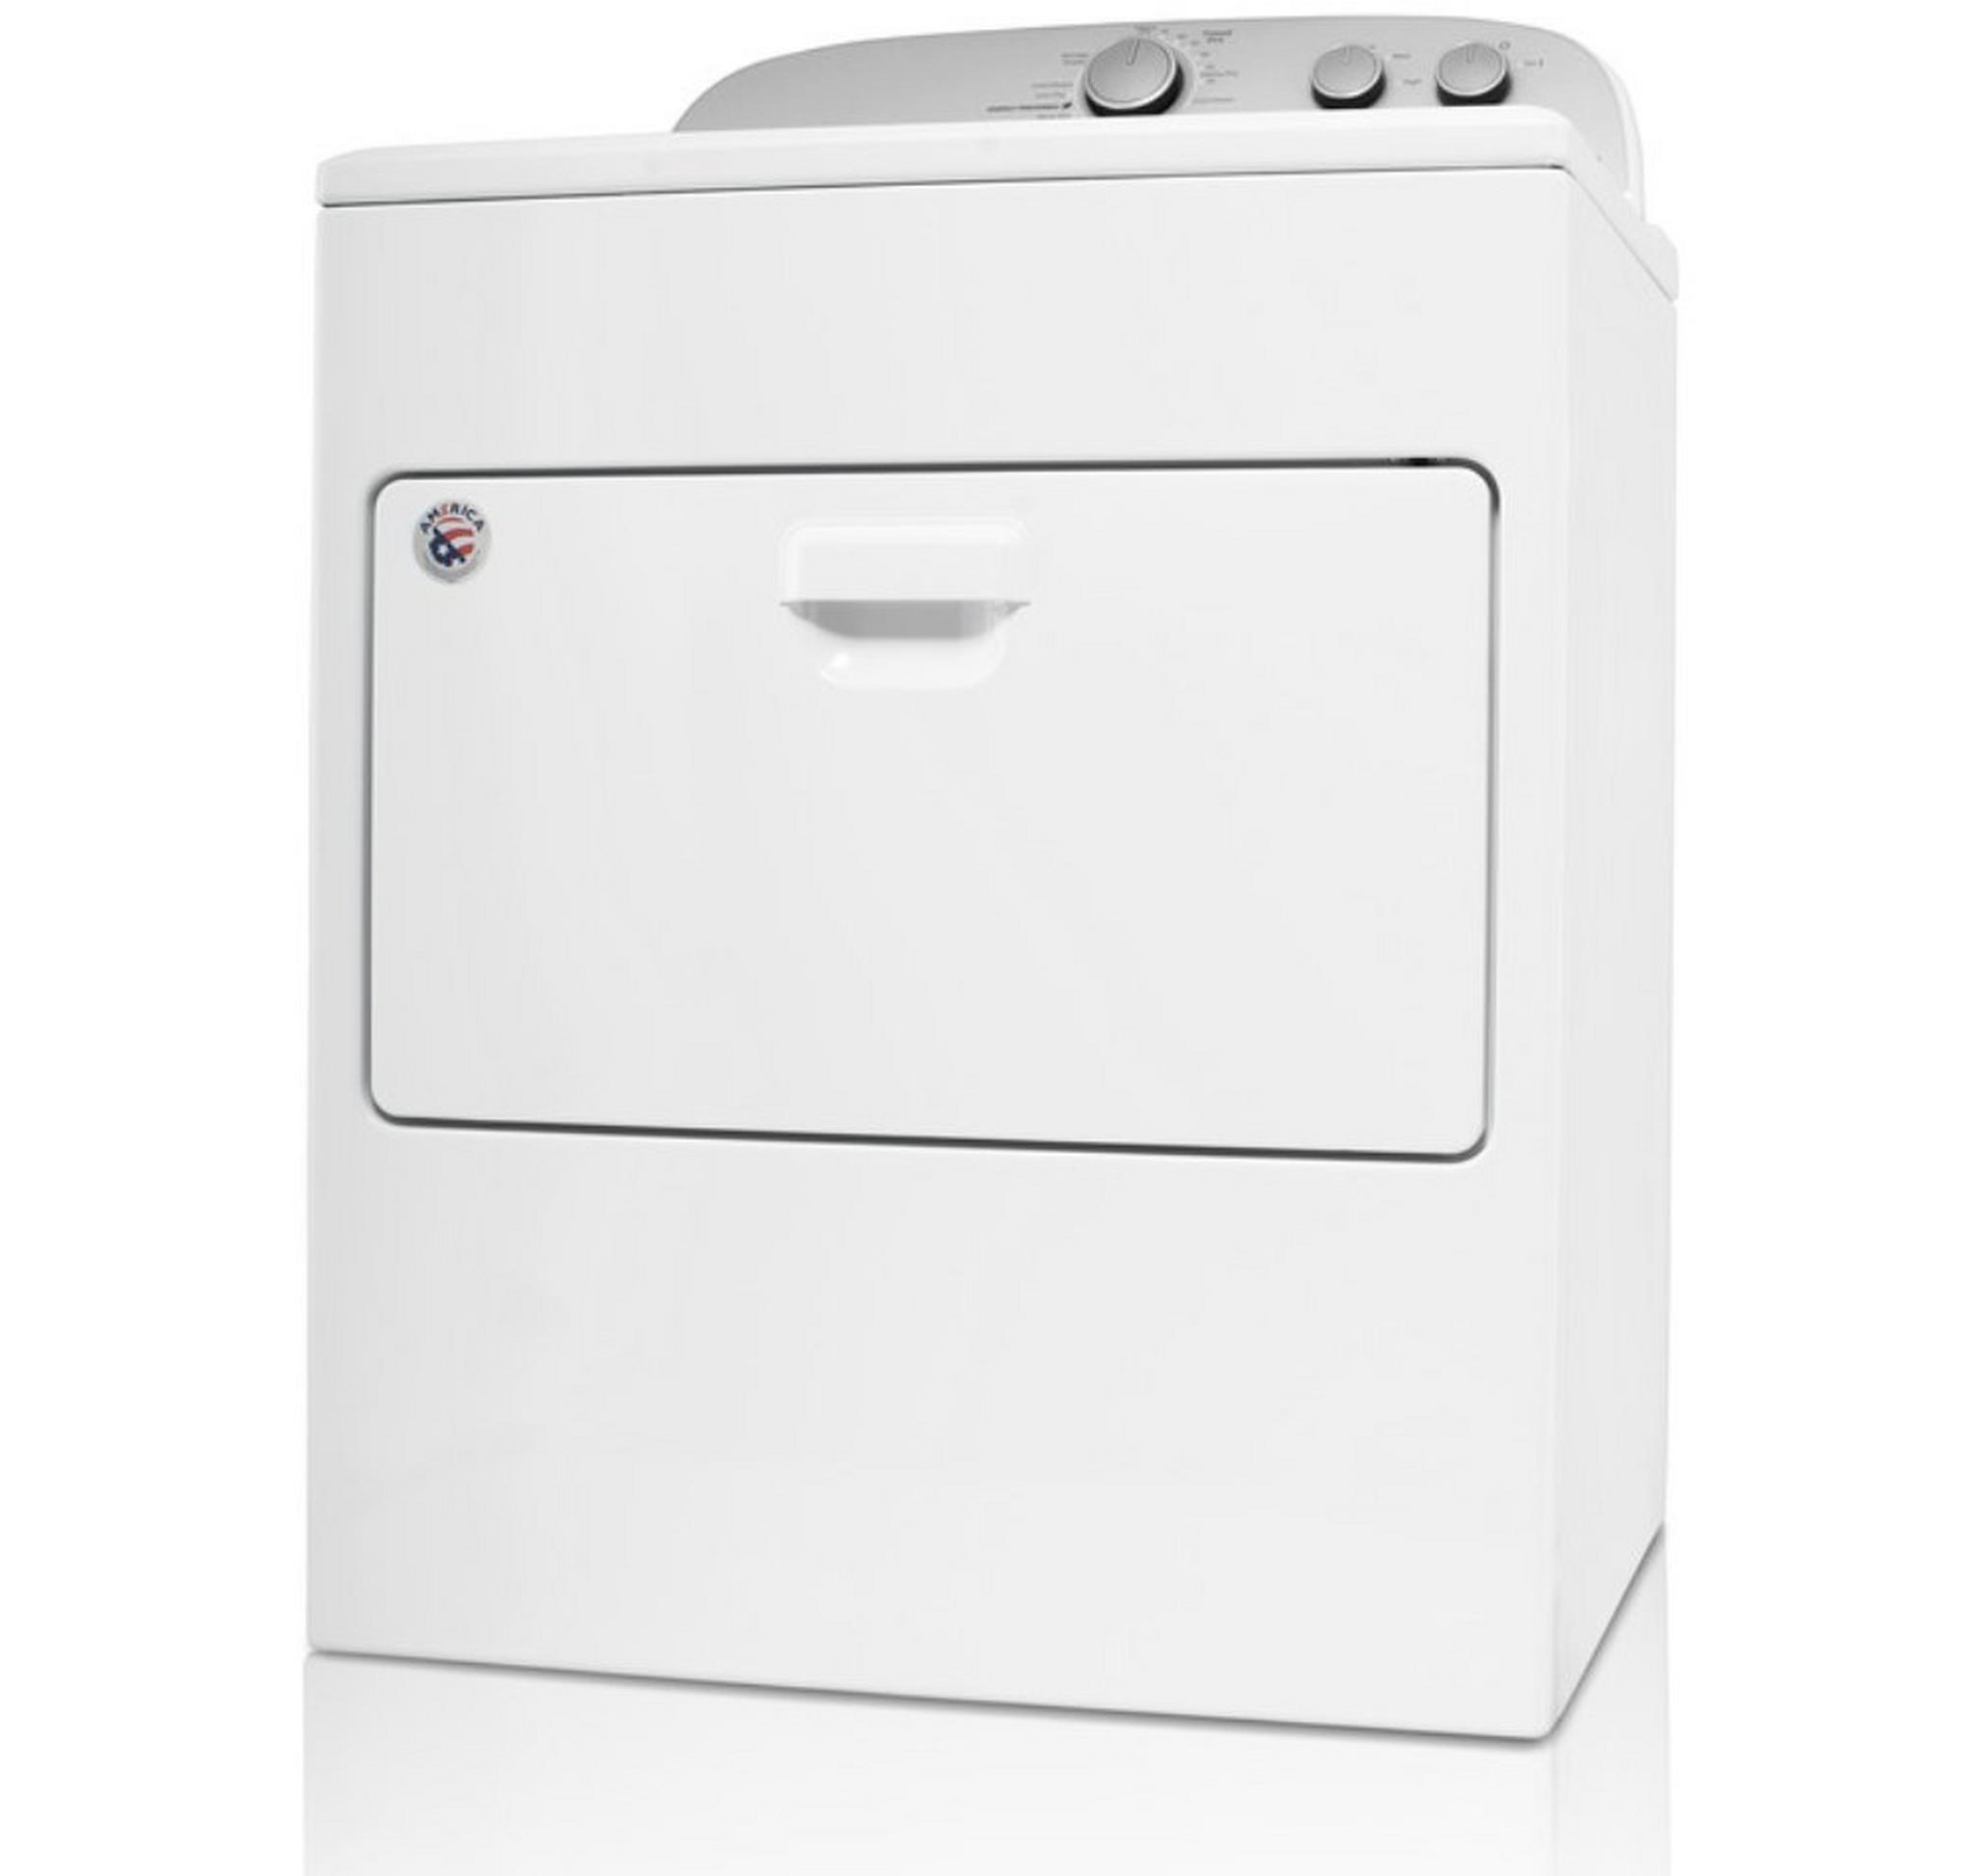 Whirlpool 15kg Air Vented Dryer (3LWED4830FW)